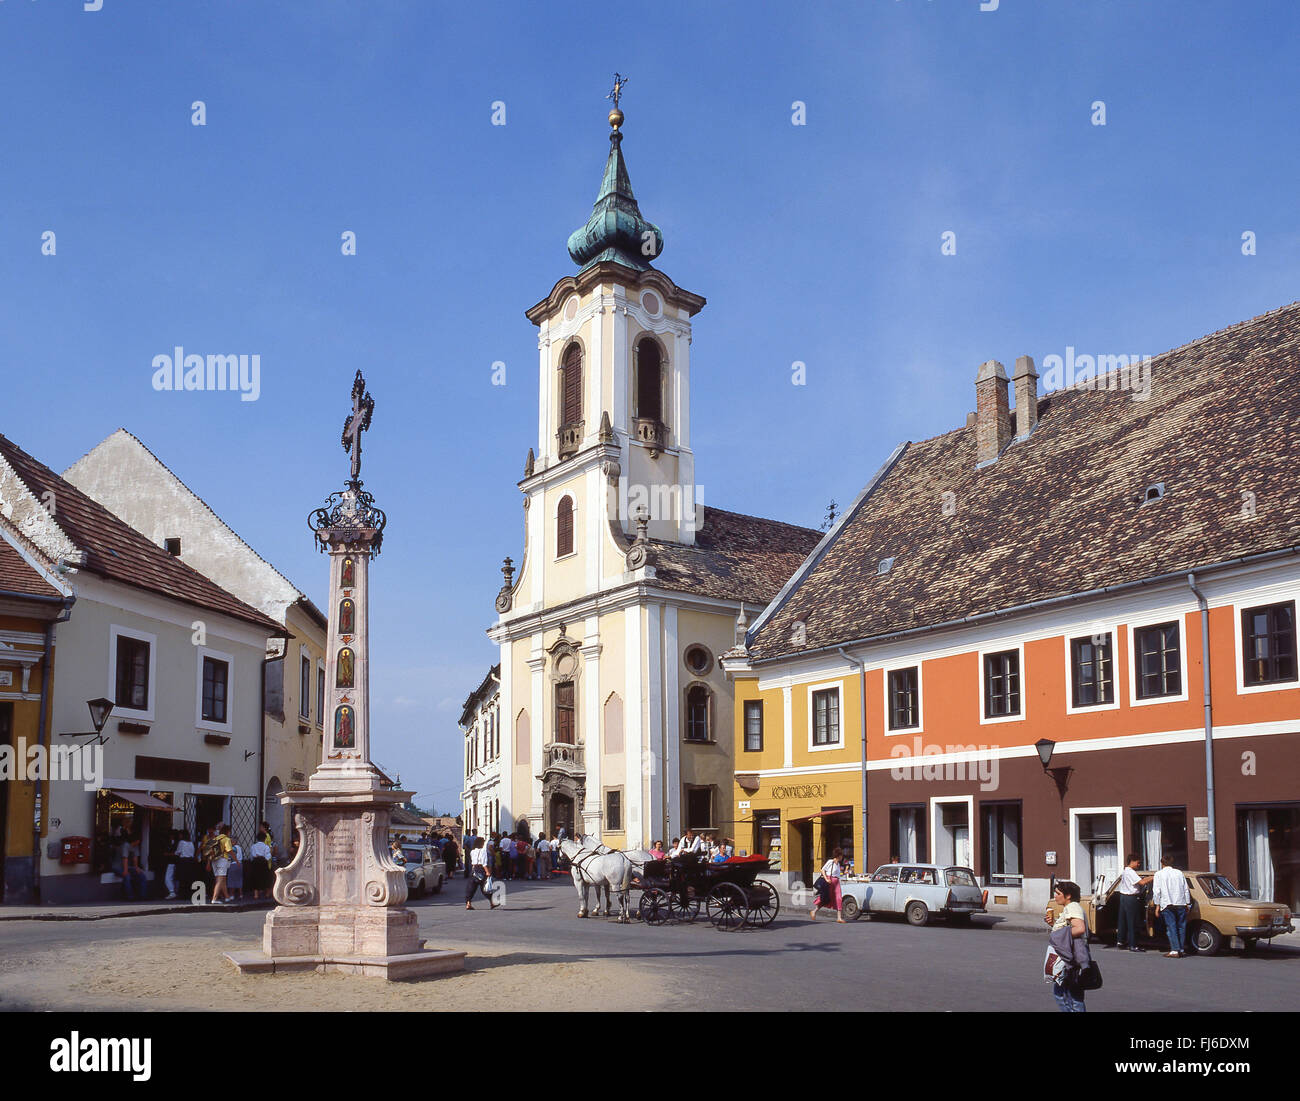 Fő tér (Plaza Principal), Szentendre, el condado Pest, la Región Central de Hungría, la República de Hungría Foto de stock